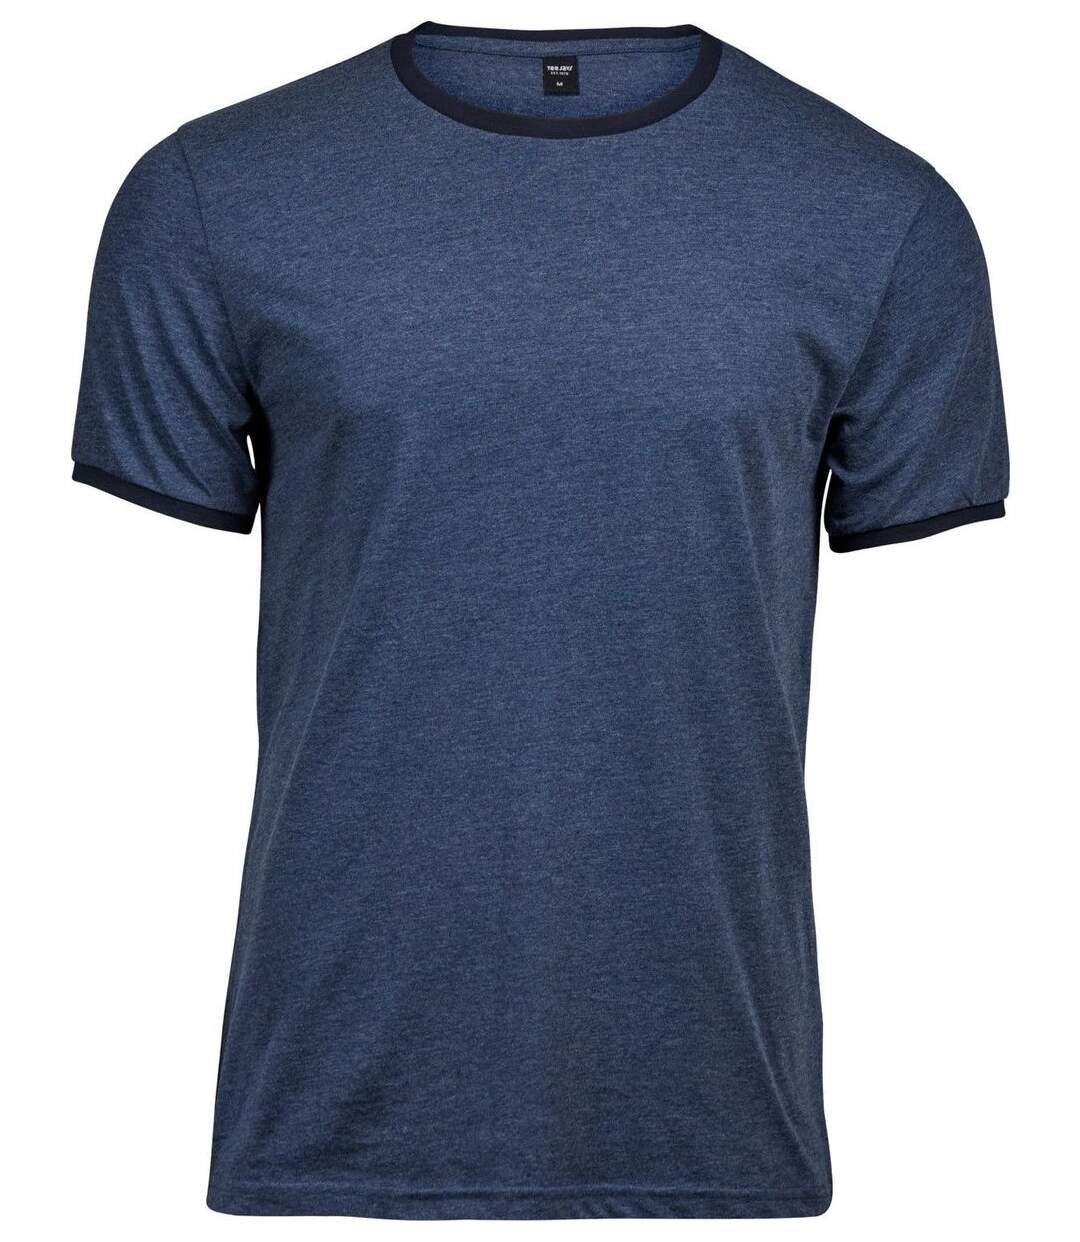 T-shirt manches courtes Homme bords contrastés - 5070 - bleu denim